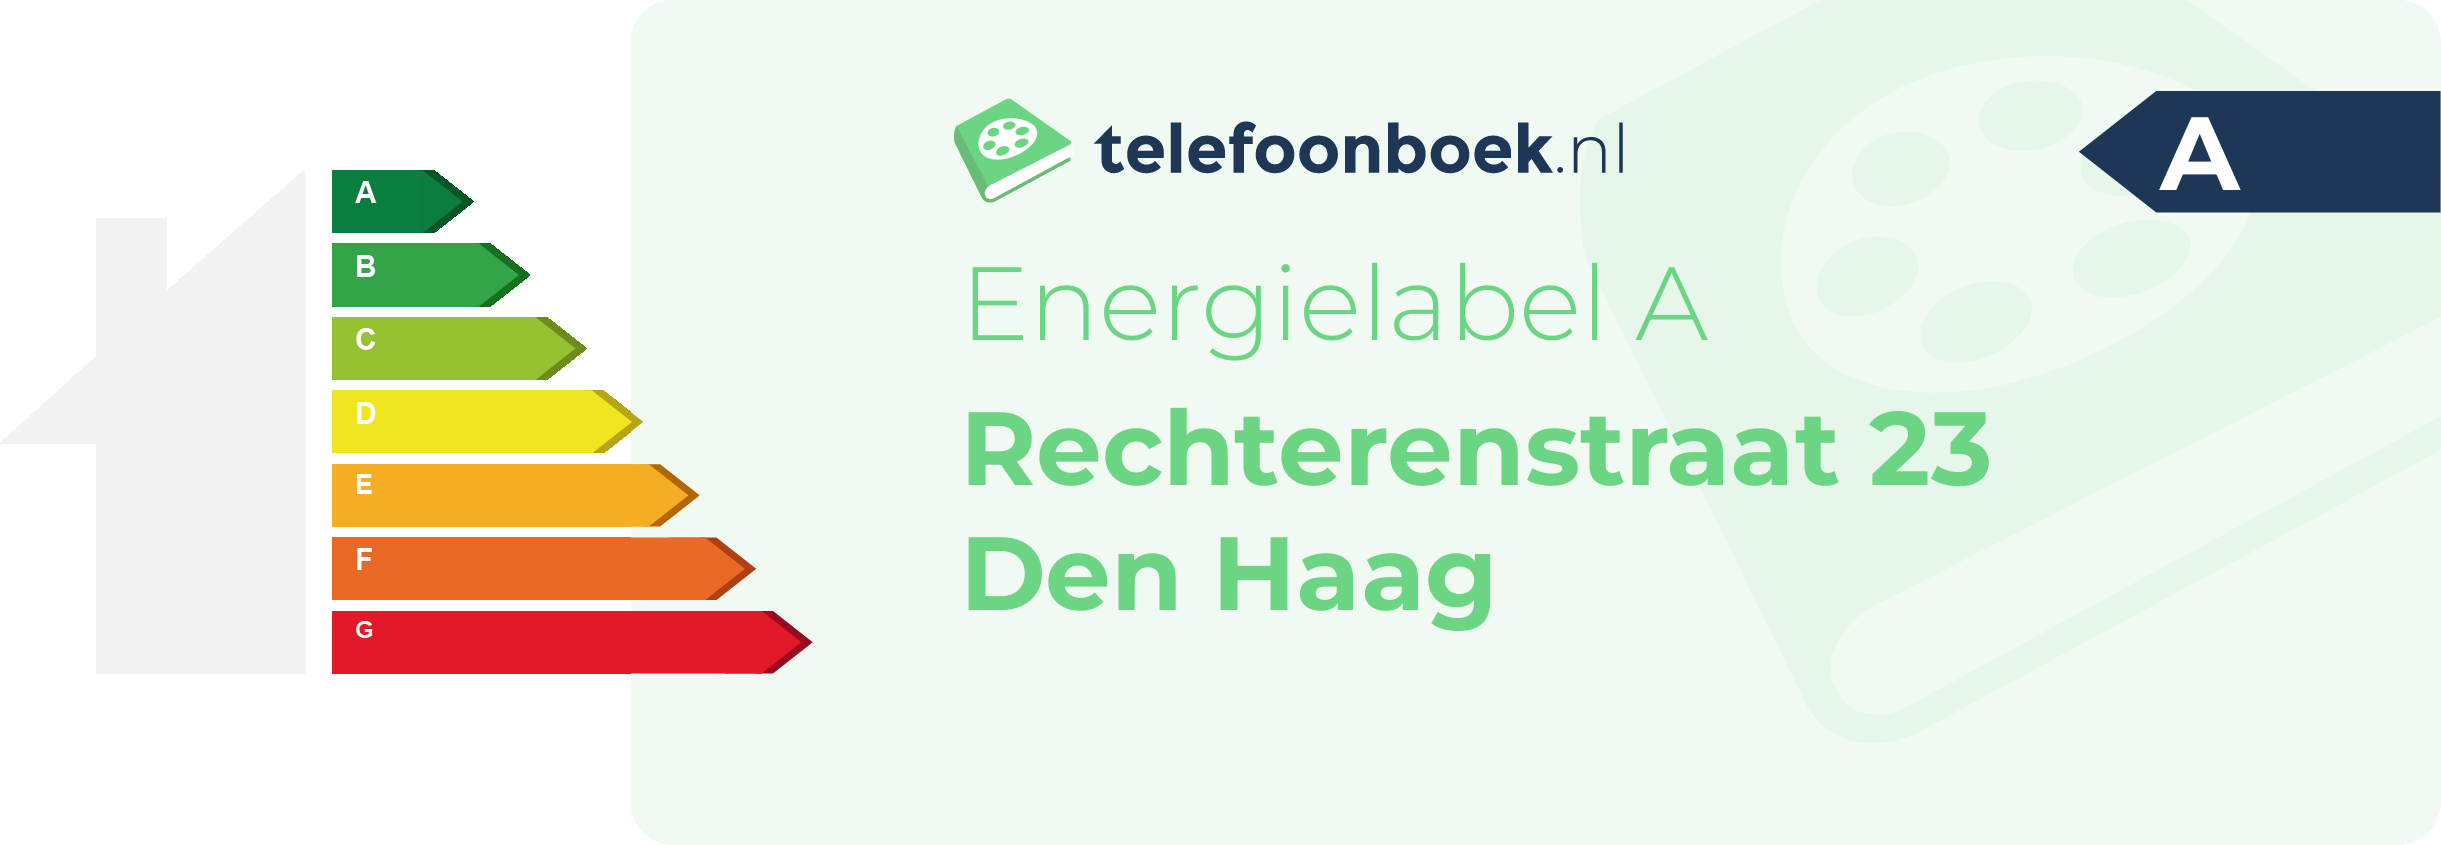 Energielabel Rechterenstraat 23 Den Haag